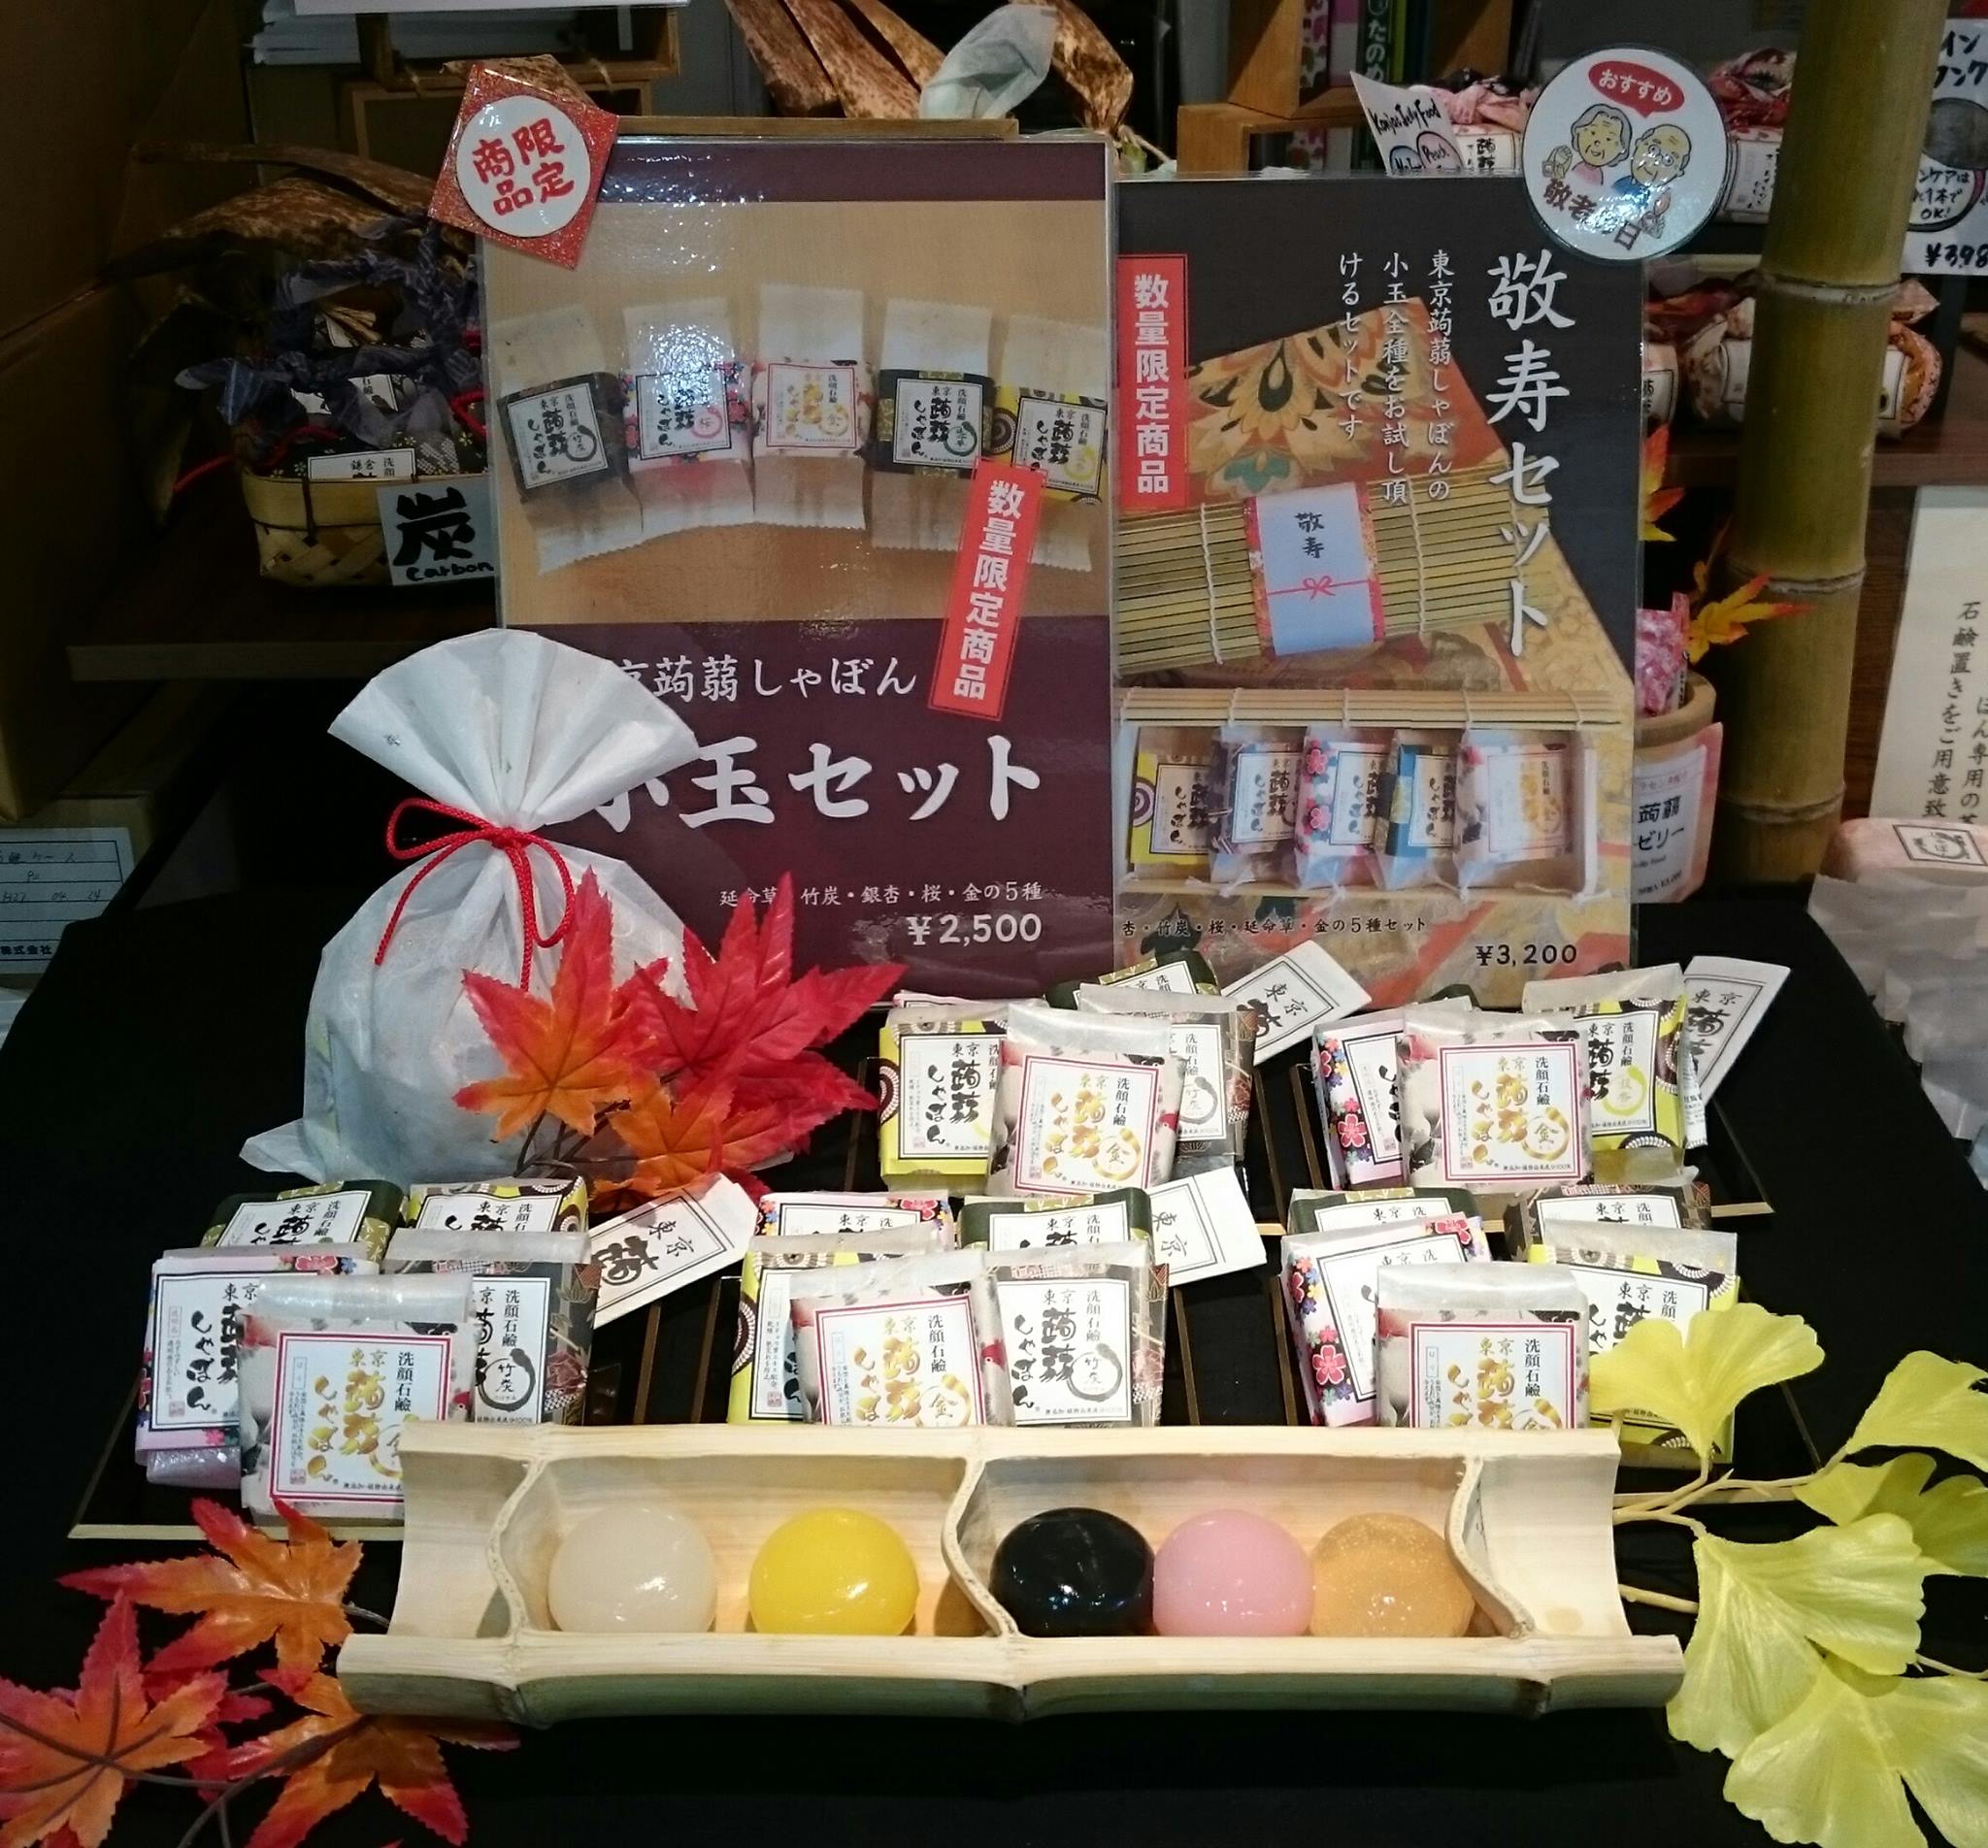 鎌倉で人気のお土産30選♡大人気の定番土産や鎌倉らしいお洒落な洋菓子まで外さないお土産をまとめました。